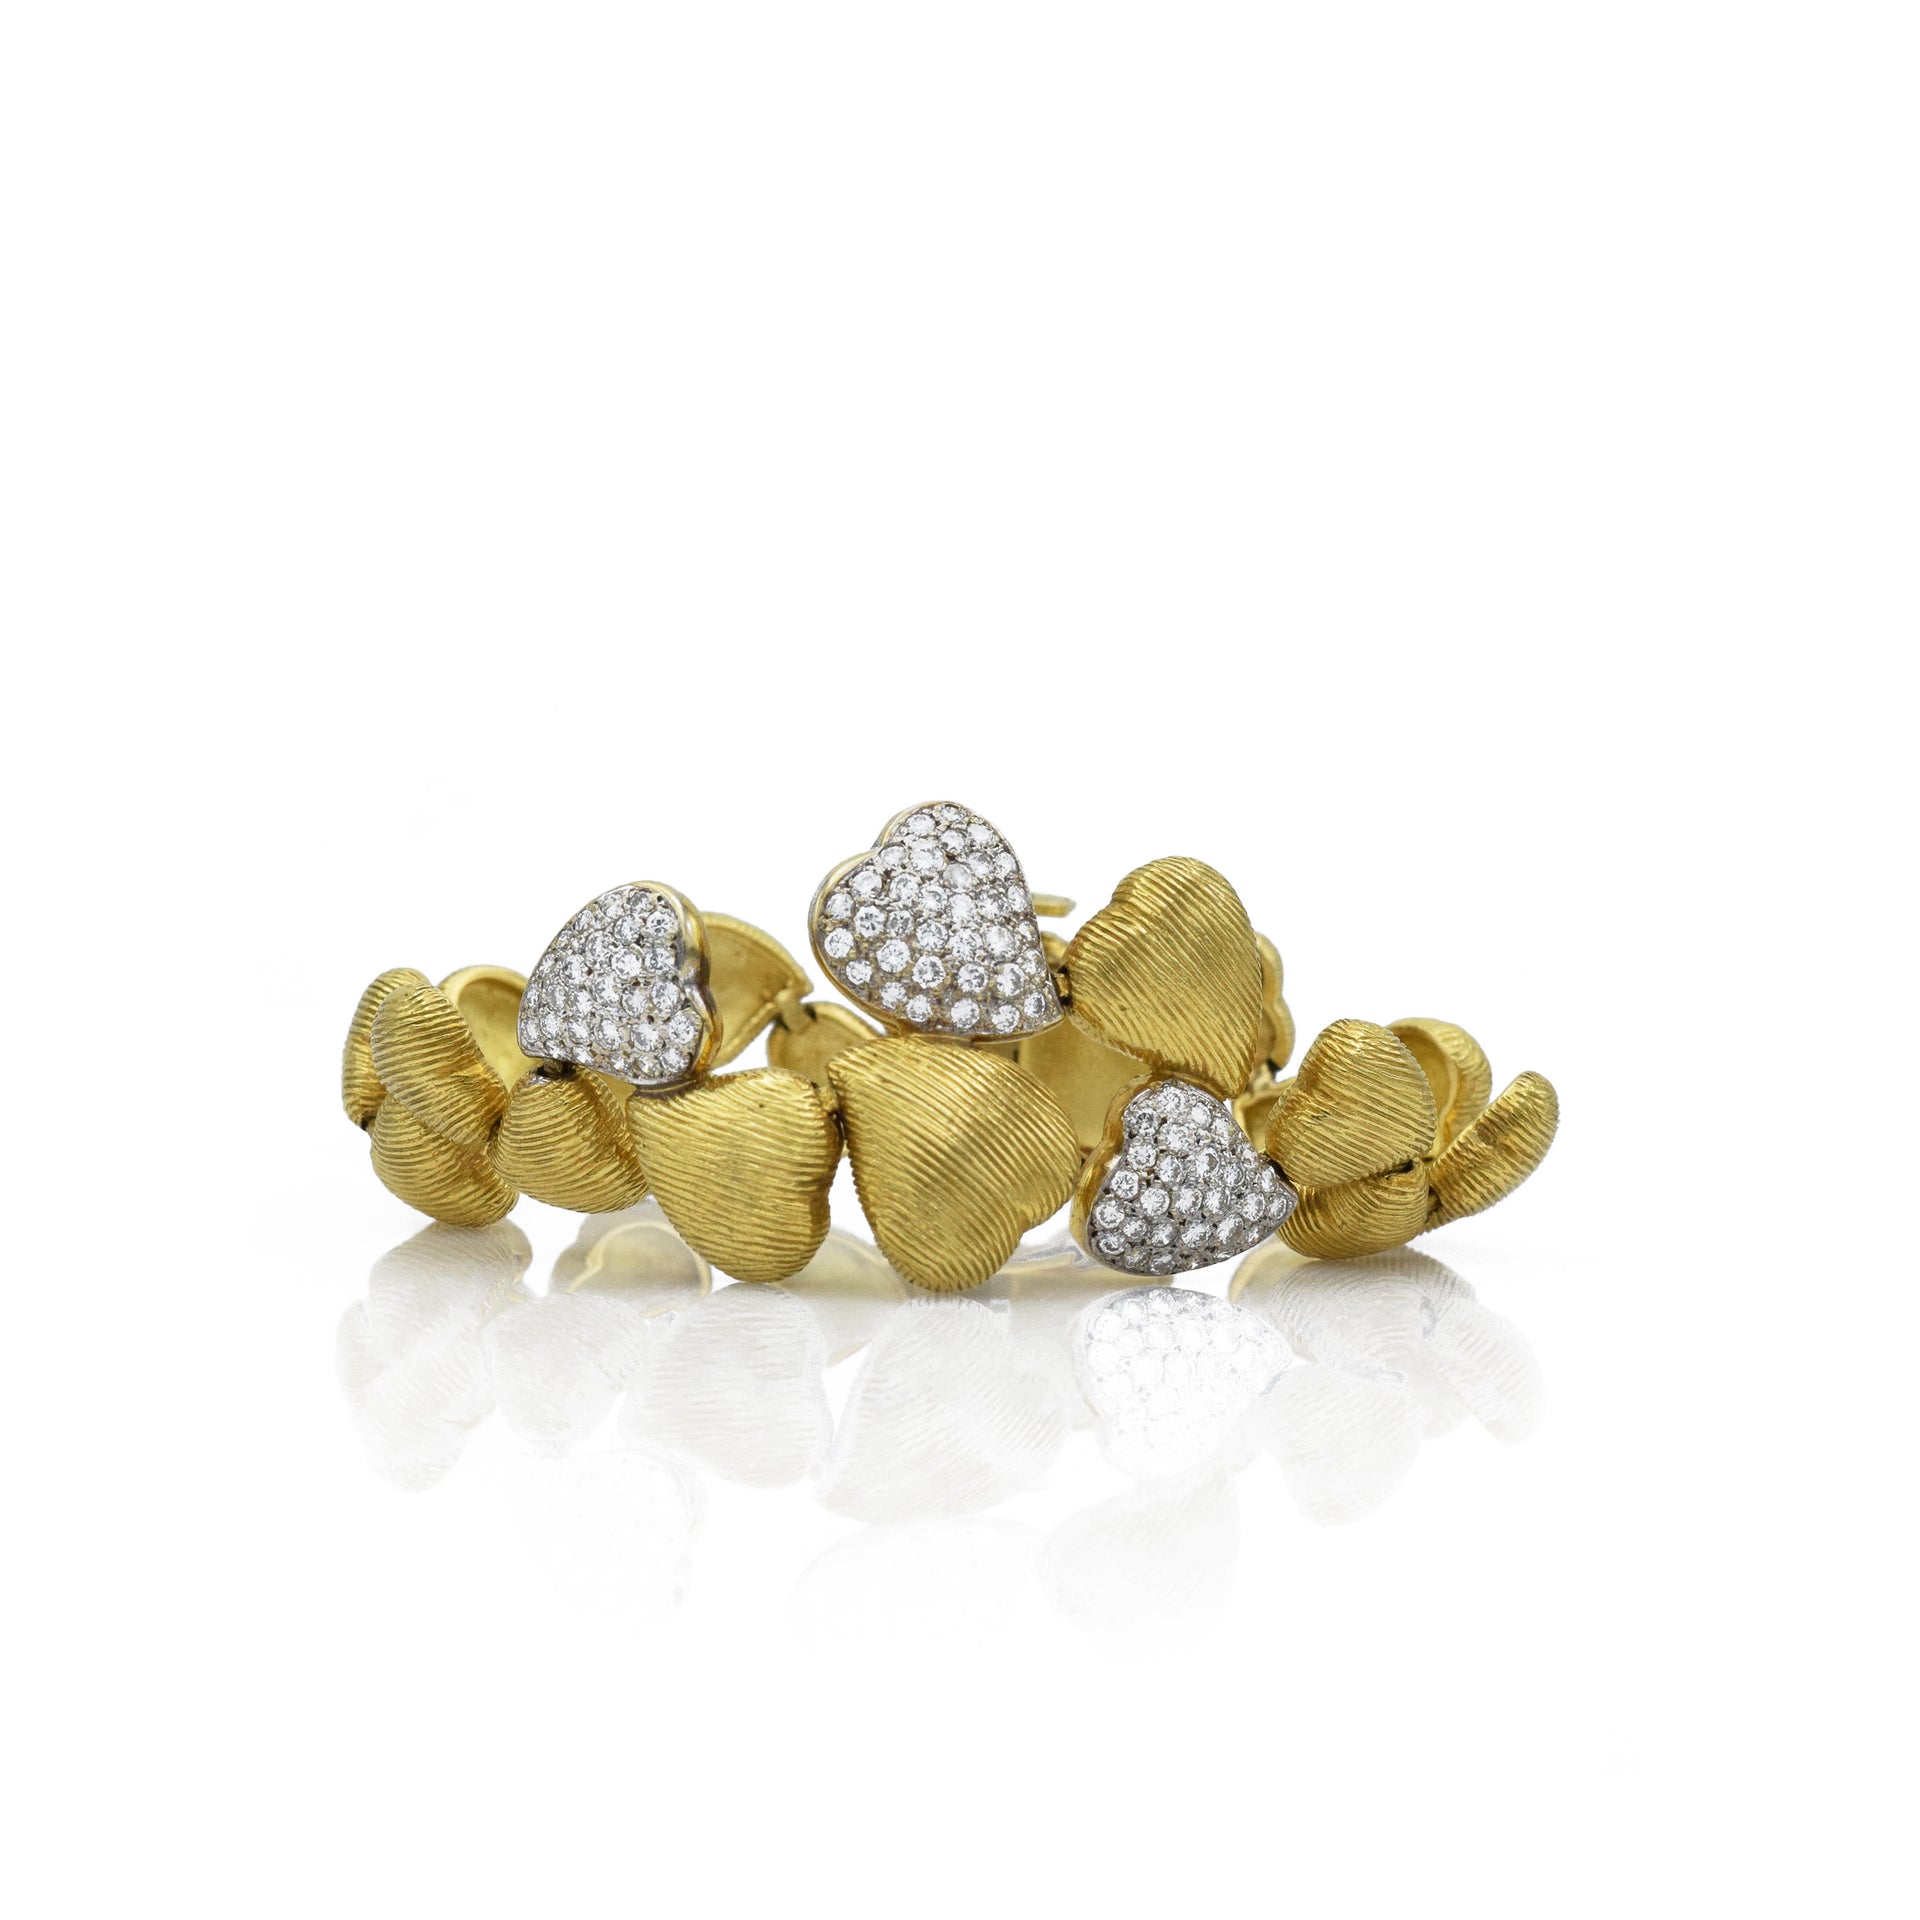 Vintage 18kt Gold "Floating Heart" Bracelet